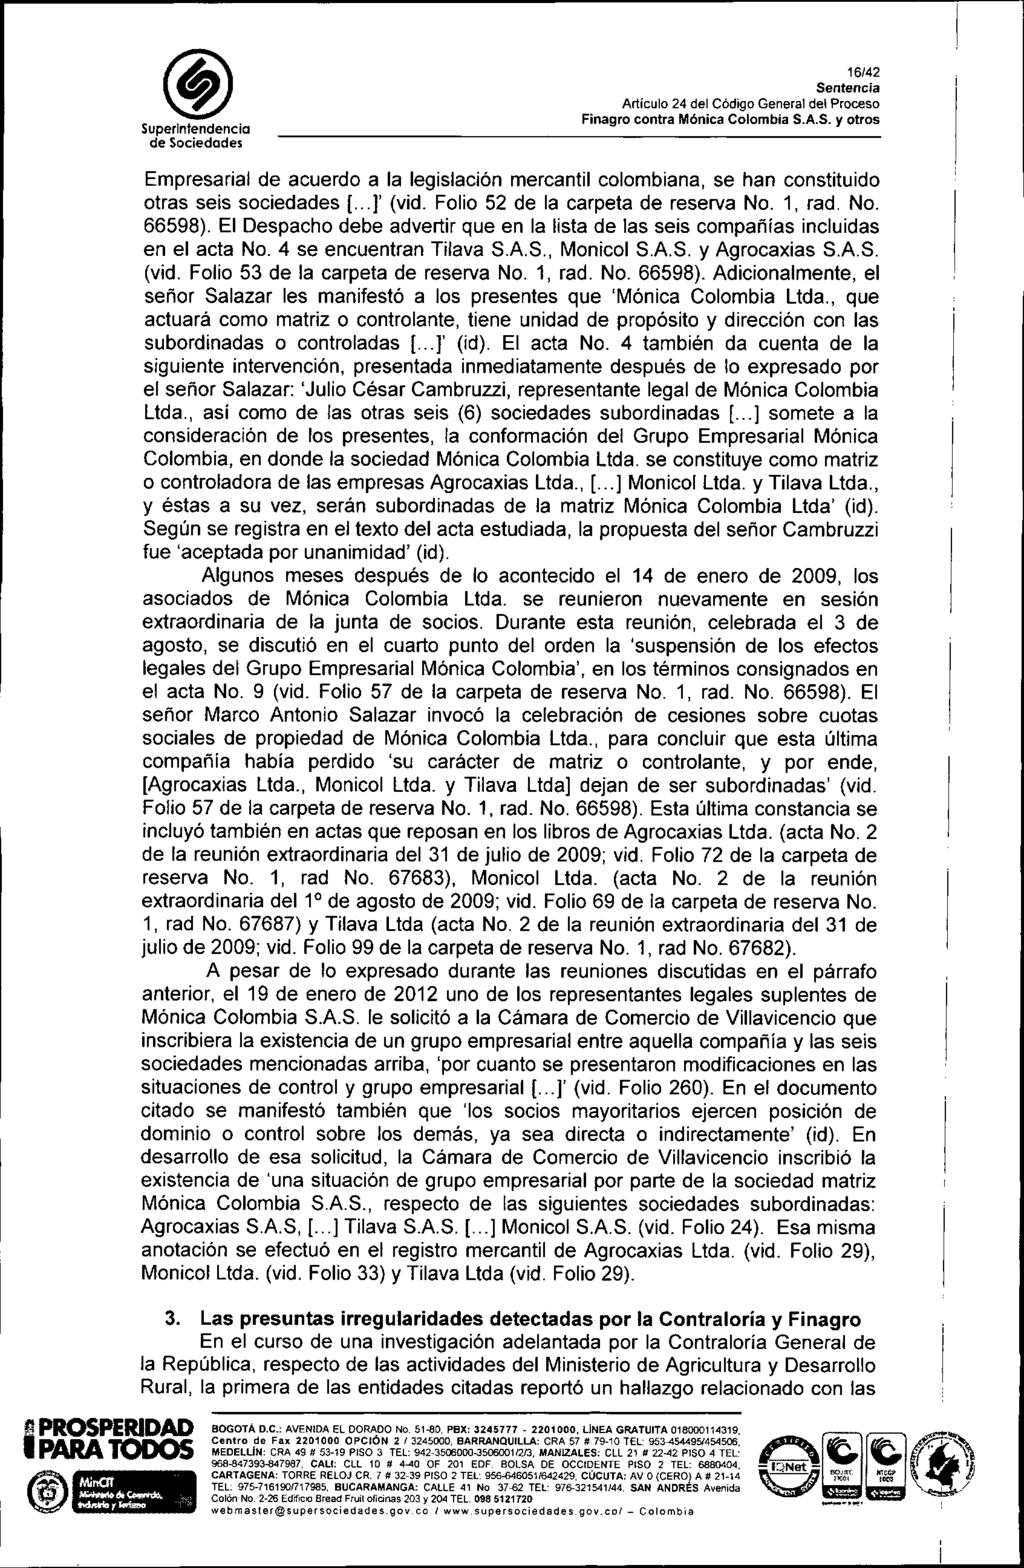 SuperIntendencia 16/42 I'J PROSPERIDAD IPARA TODOS ti' W Empresarial de acuerdo a la legislación mercantil colombiana, se han constituido otras seis sociedades [... )' (vid.